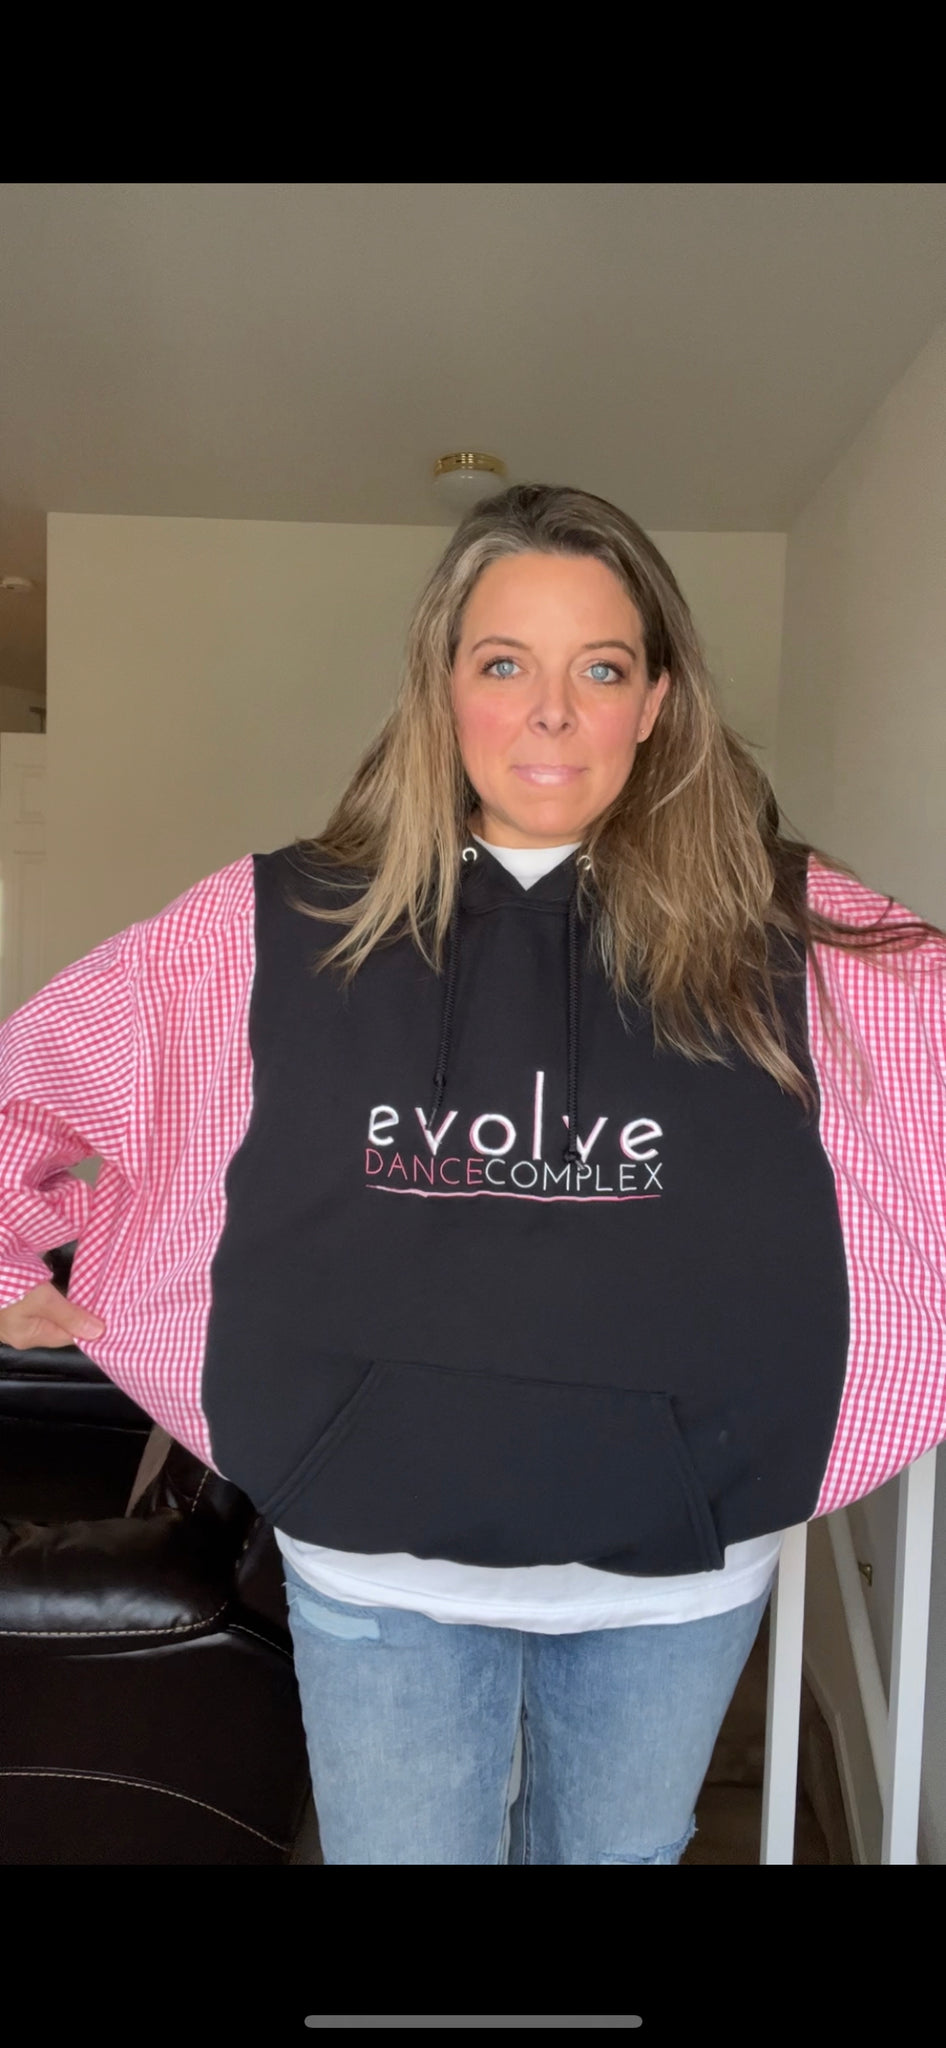 Evolve Dance Upcycled Sweatshirt